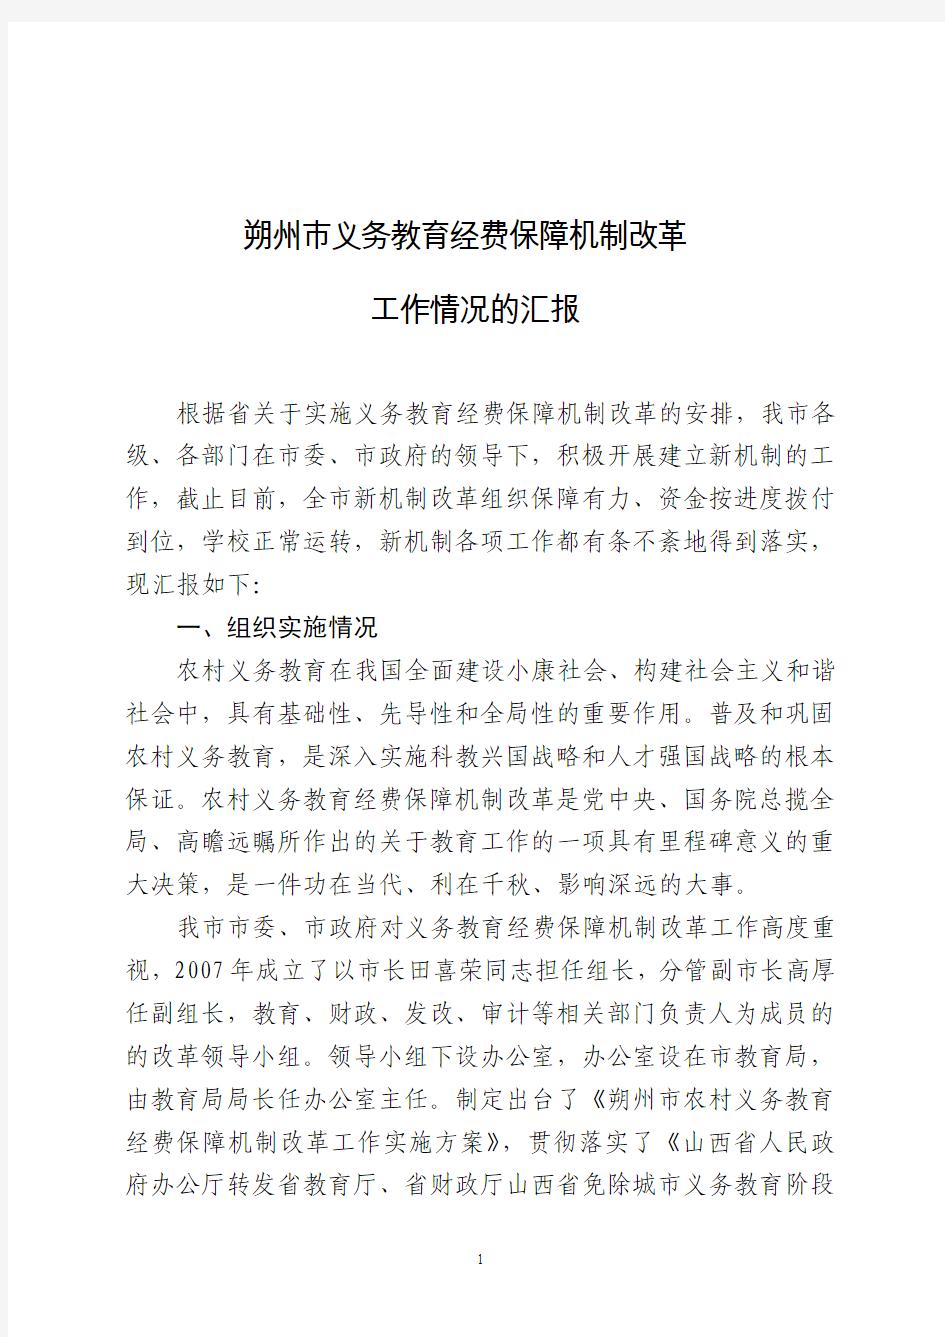 朔州市农村义务教育经费保障机制改革工作汇报(20110419)